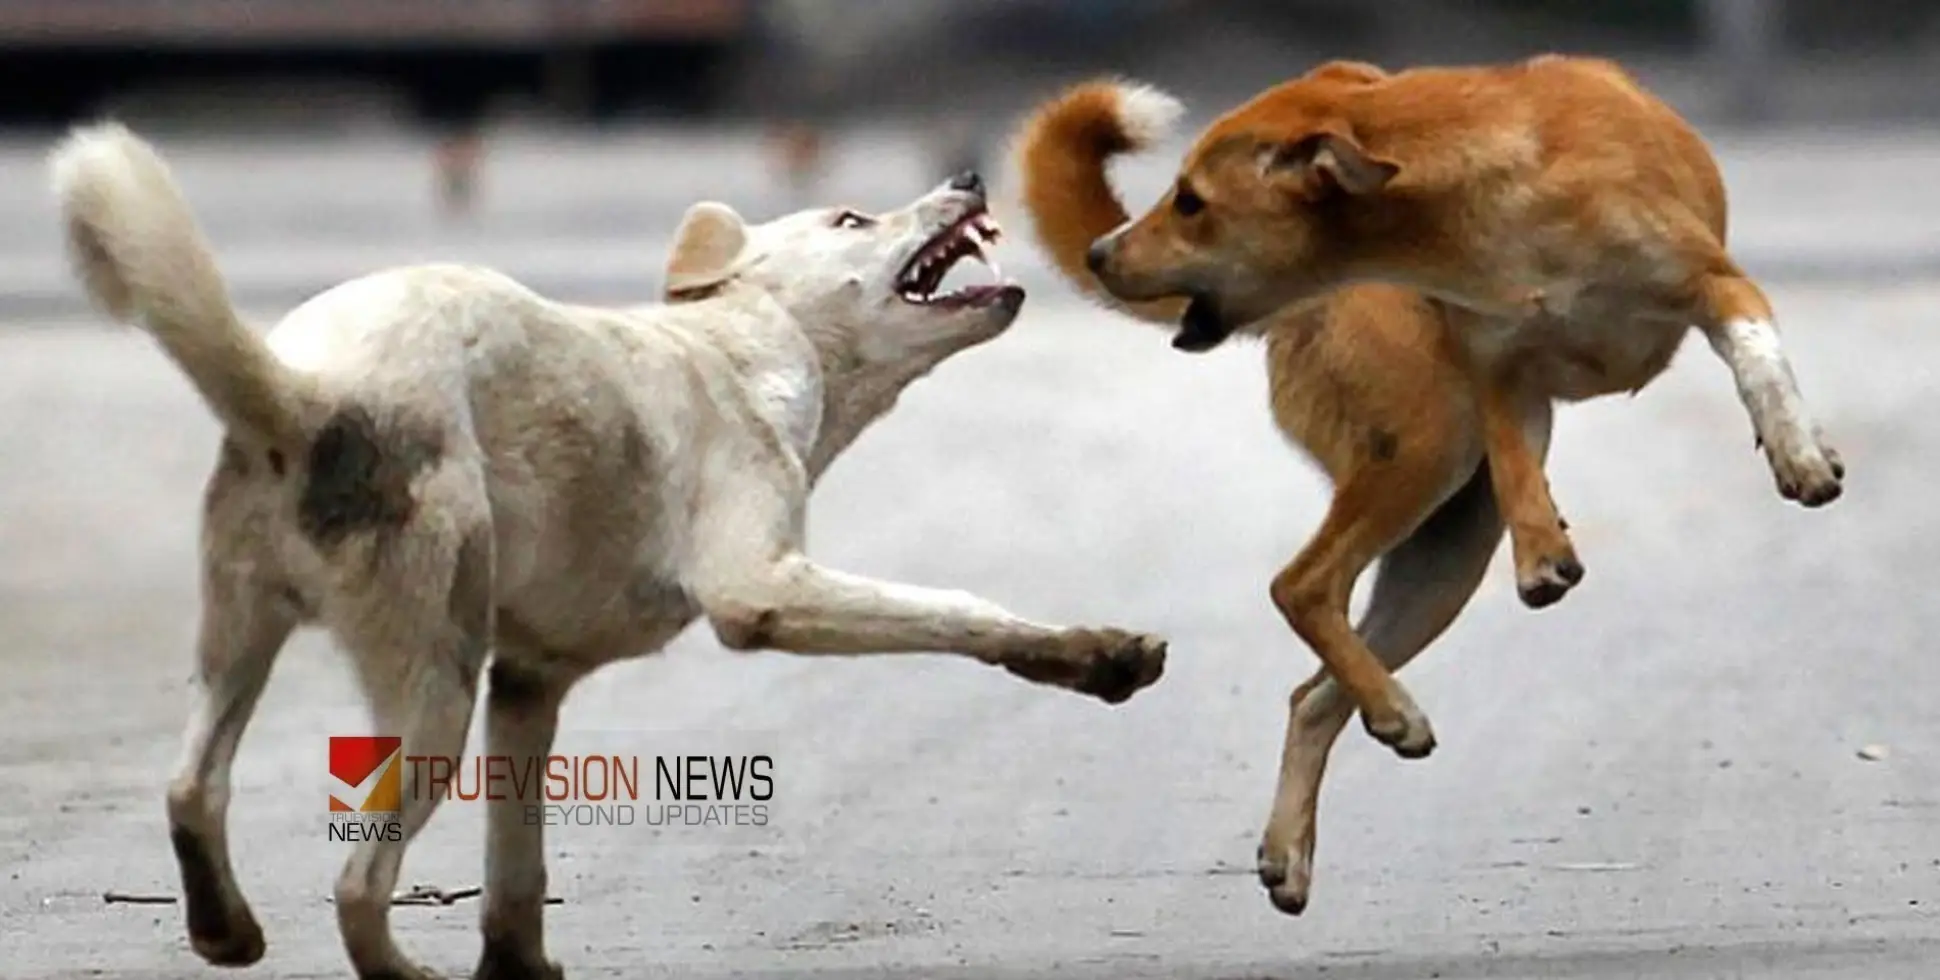 #Straydog |കോഴിക്കോട്  മൂന്ന് വയോധികര്‍ക്ക് തെരുവ് നായയുടെ കടിയേറ്റു, വളര്‍ത്തുമൃഗങ്ങളെയും ആക്രമിച്ചു